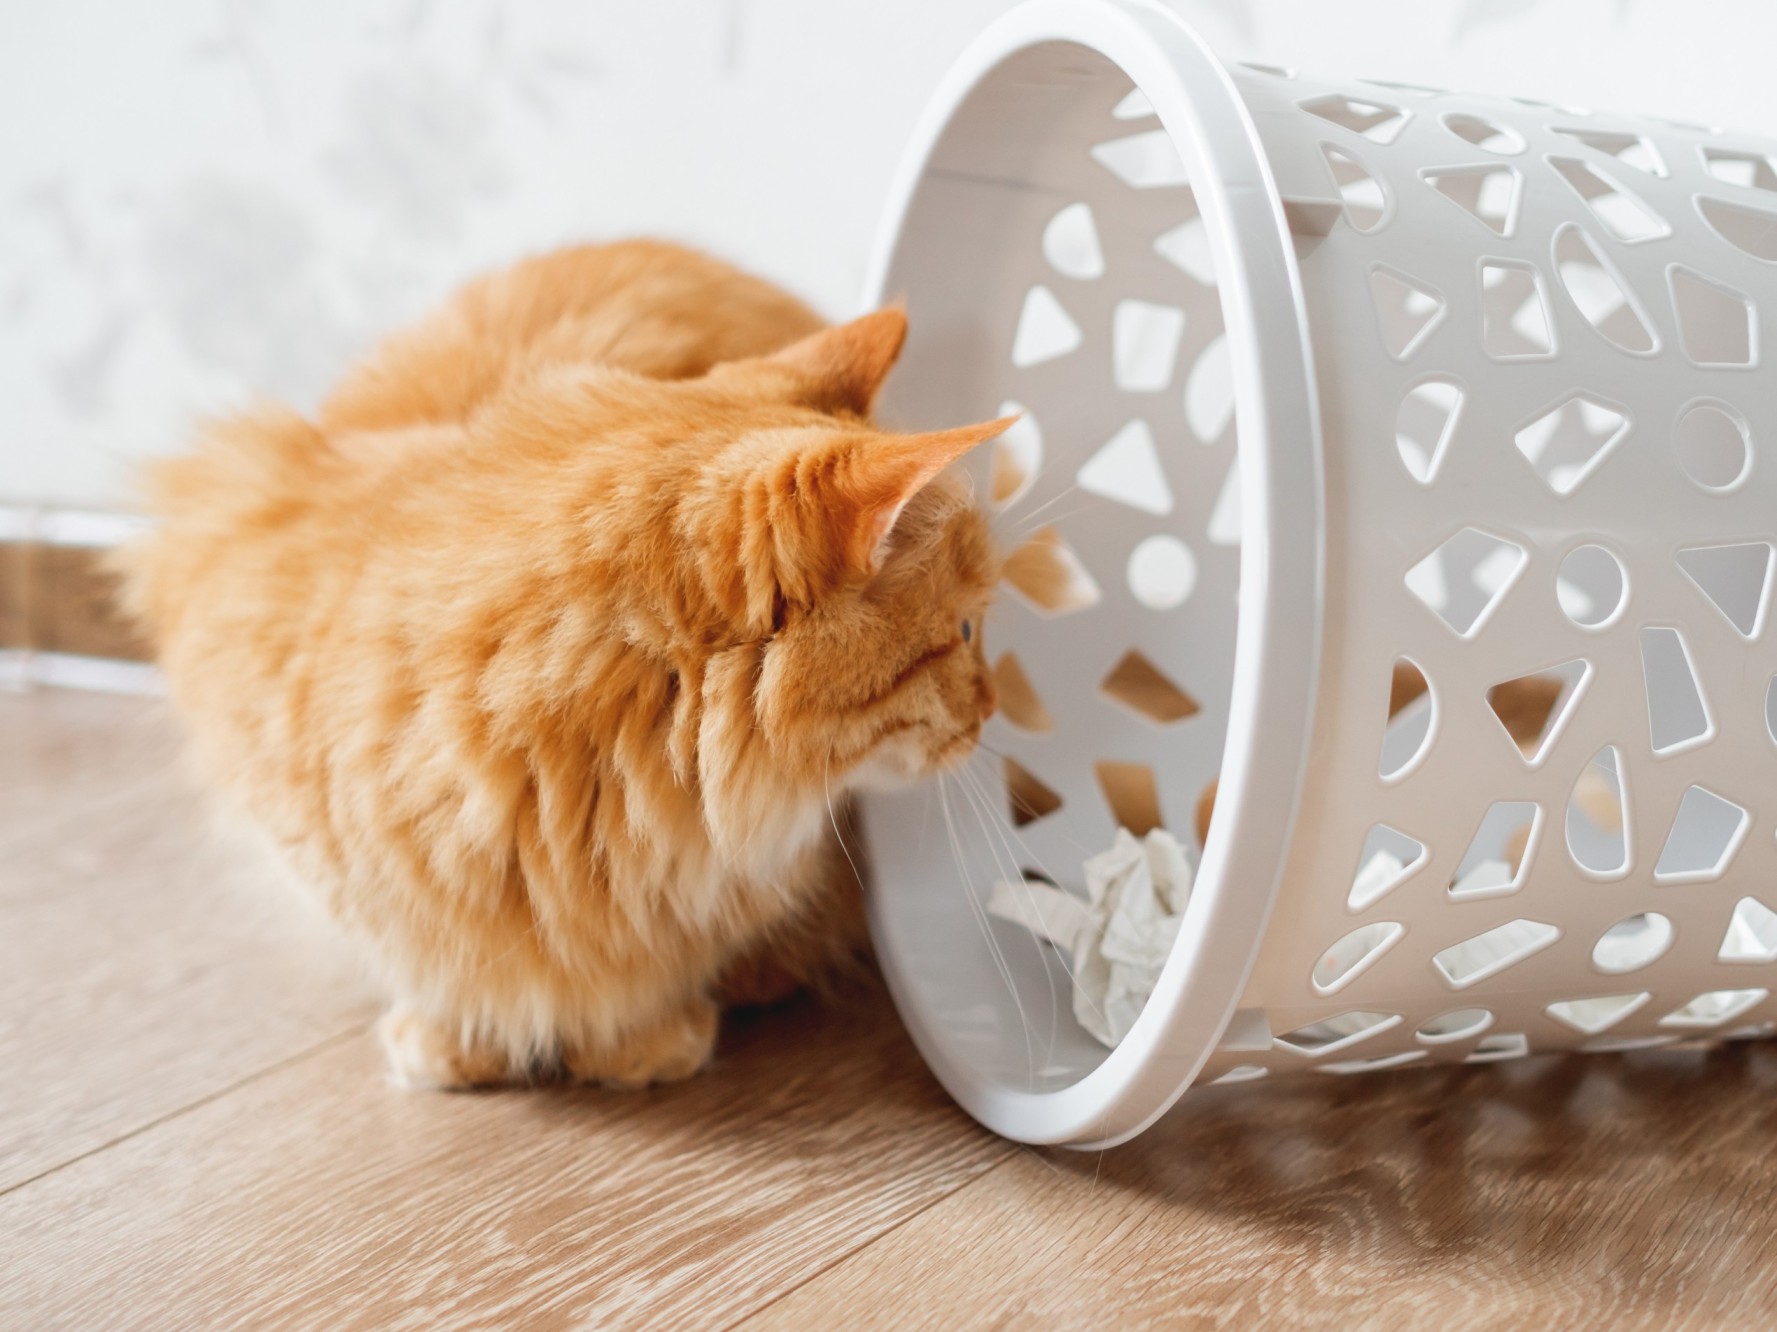 A cat peeking inside a waste paper bin